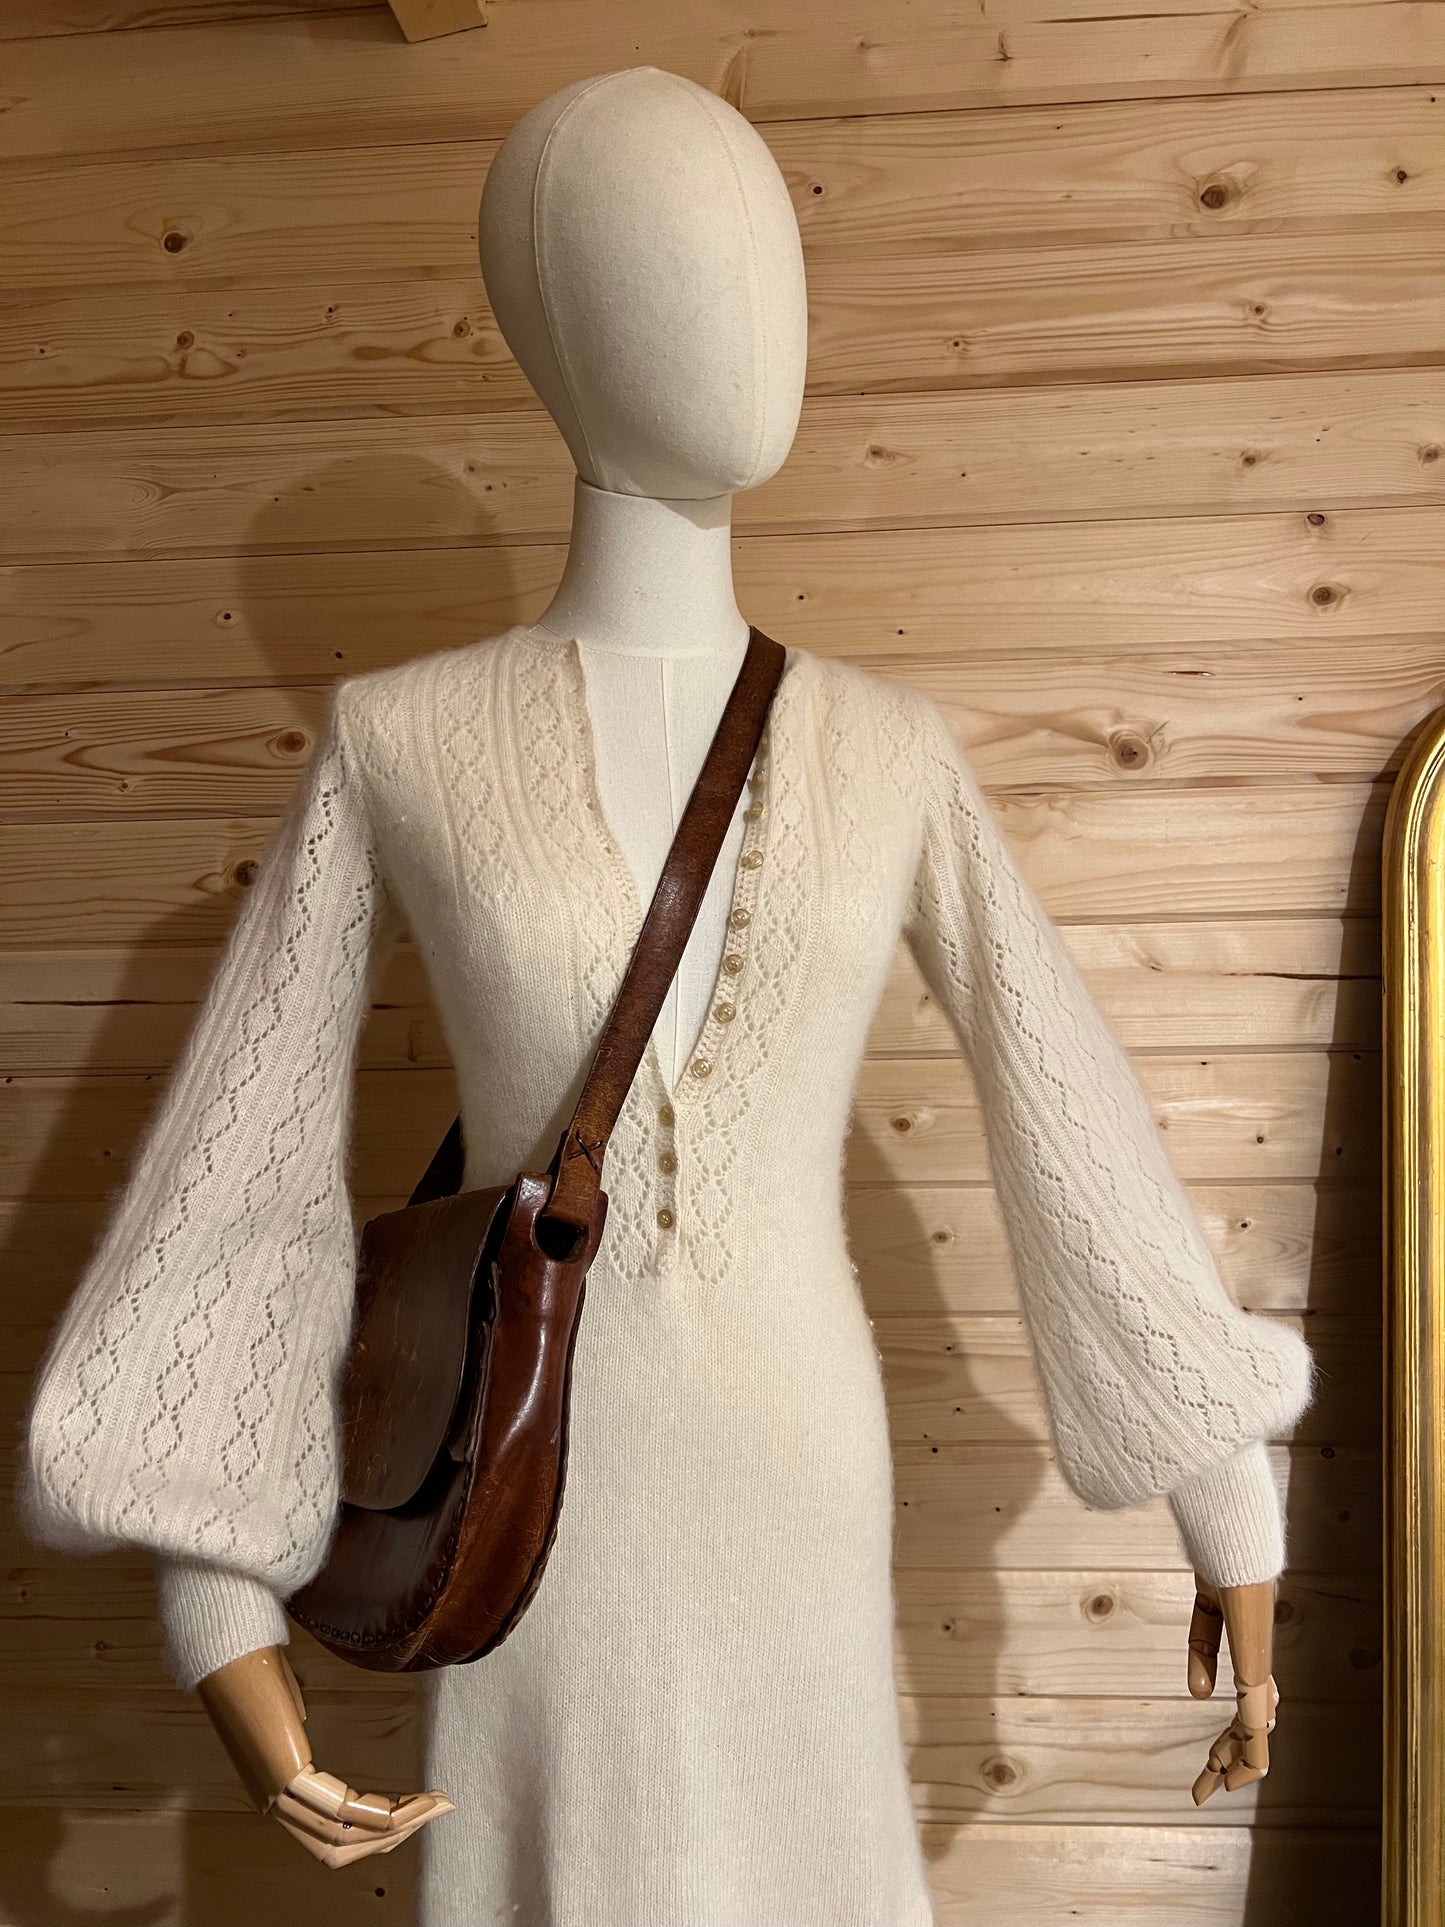 1970s angora knit dress